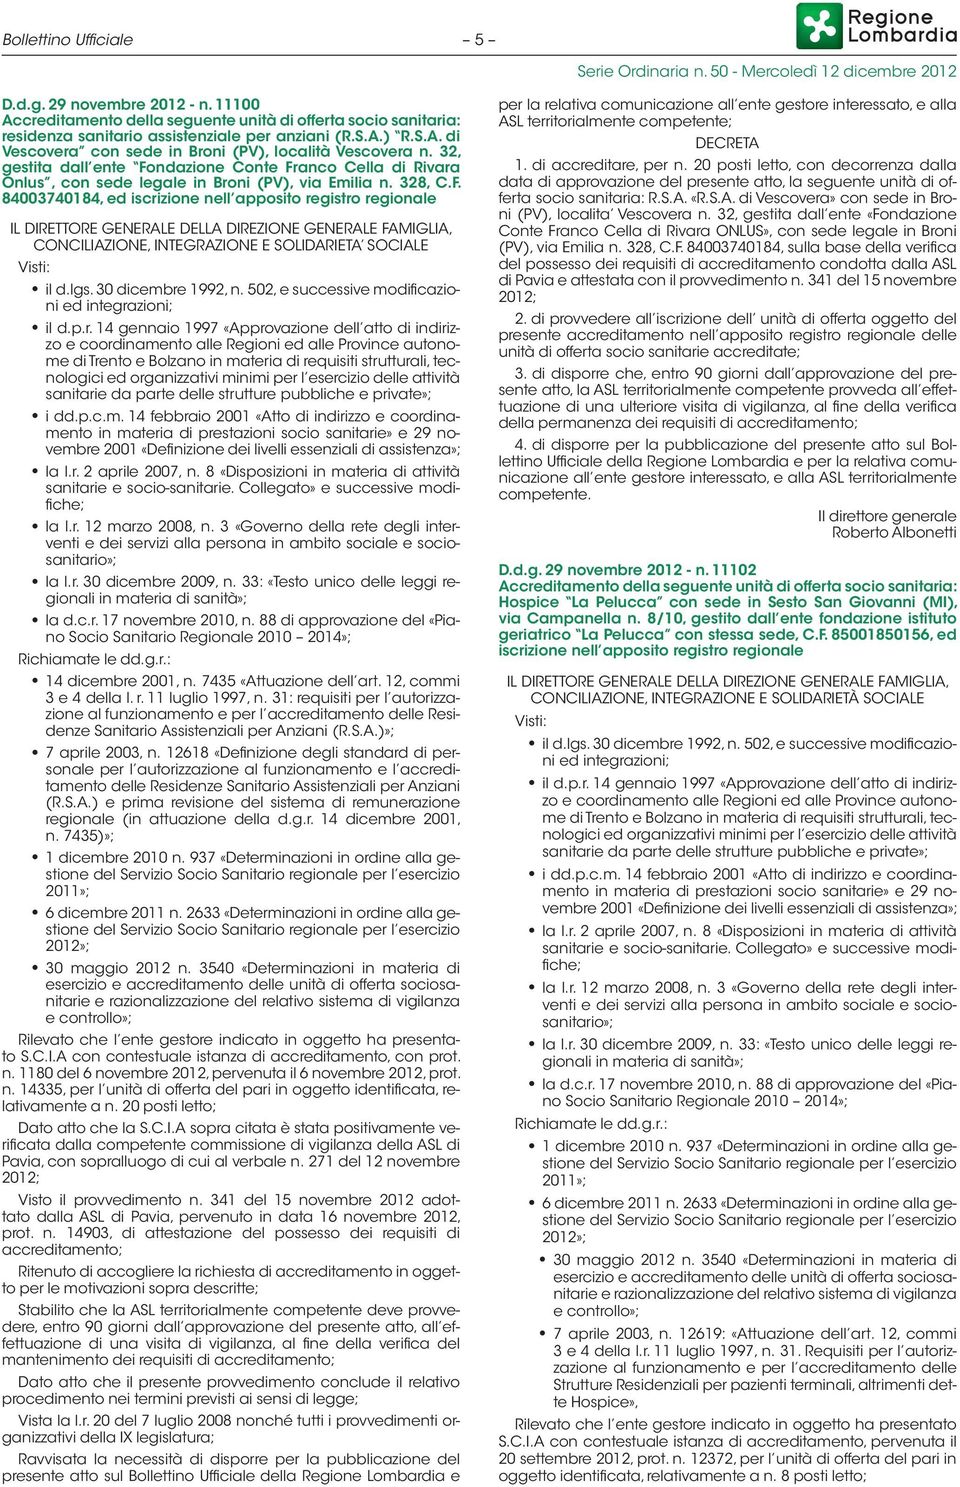 ndazione Conte Franco Cella di Rivara Onlus, con sede legale in Broni (PV), via Emilia n. 328, C.F. 84003740184, ed iscrizione nell apposito registro regionale IL DIRETTORE GENERALE DELLA DIREZIONE GENERALE FAMIGLIA, CONCILIAZIONE, INTEGRAZIONE E SOLIDARIETA SOCIALE Visti: il d.